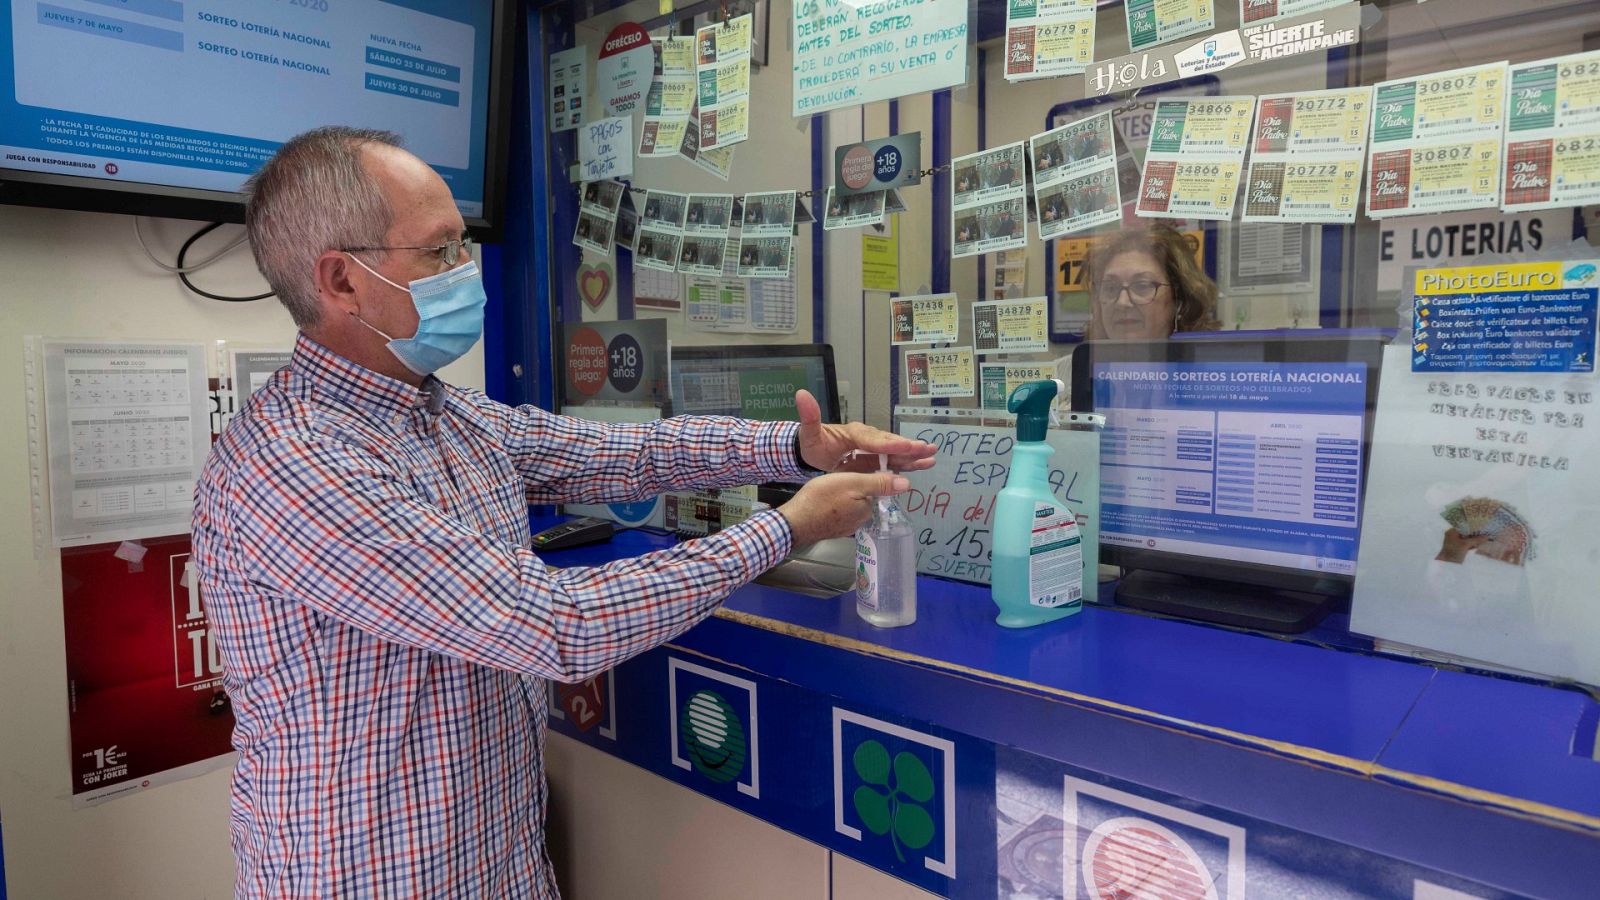 Un hombre se lava las manos con gel hidroalchólico antes de comprar lotería en una foto de archivo